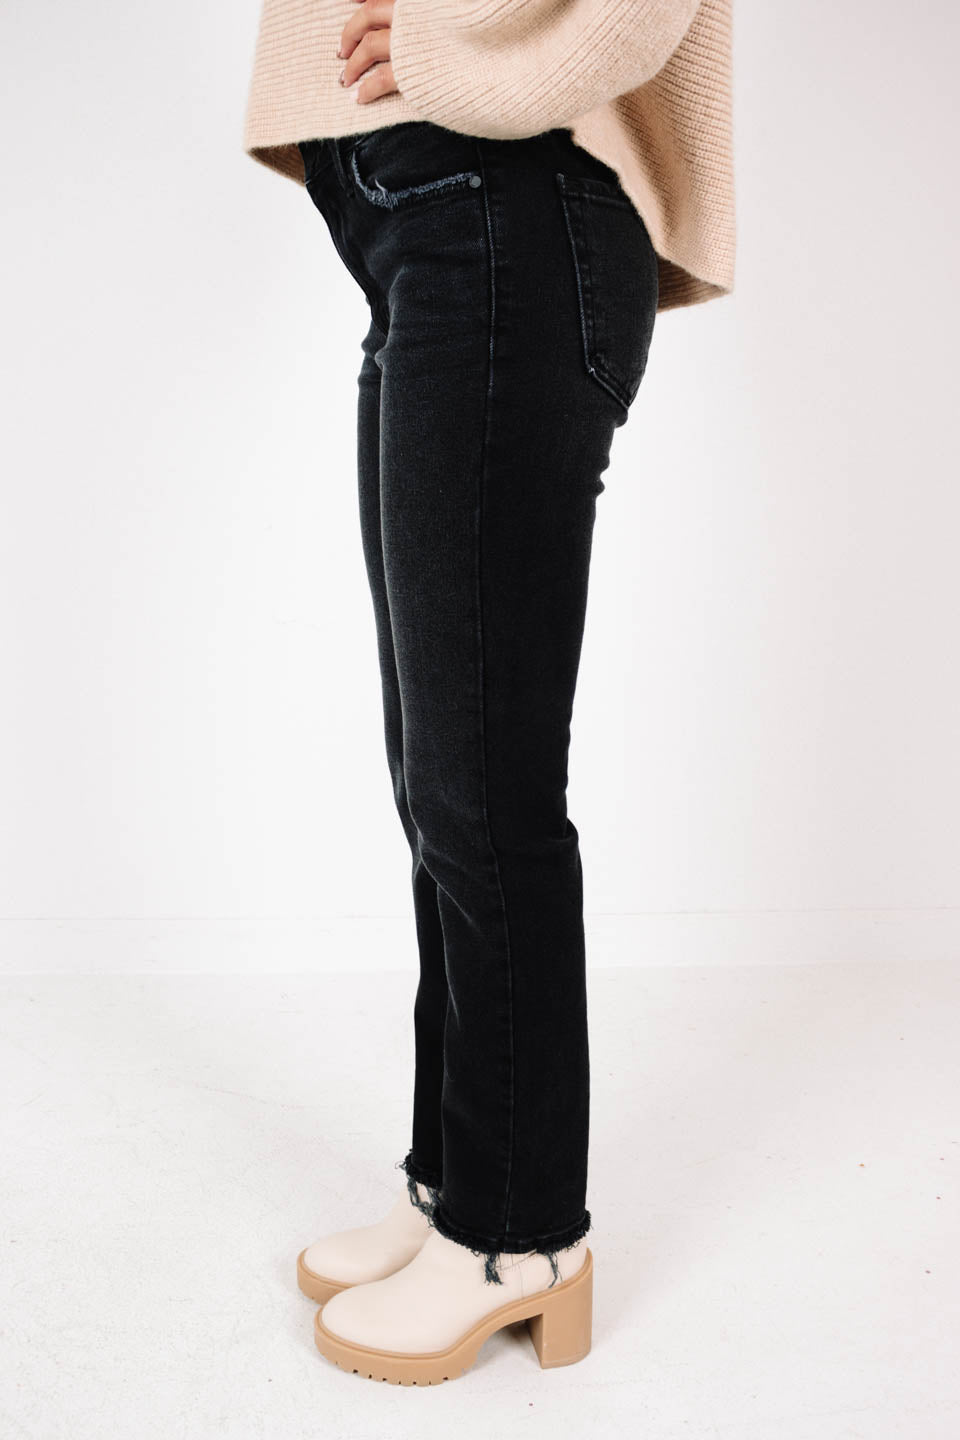 Just Black Denim Frayed Hem Jeans - Washed Black – The Impeccable Pig